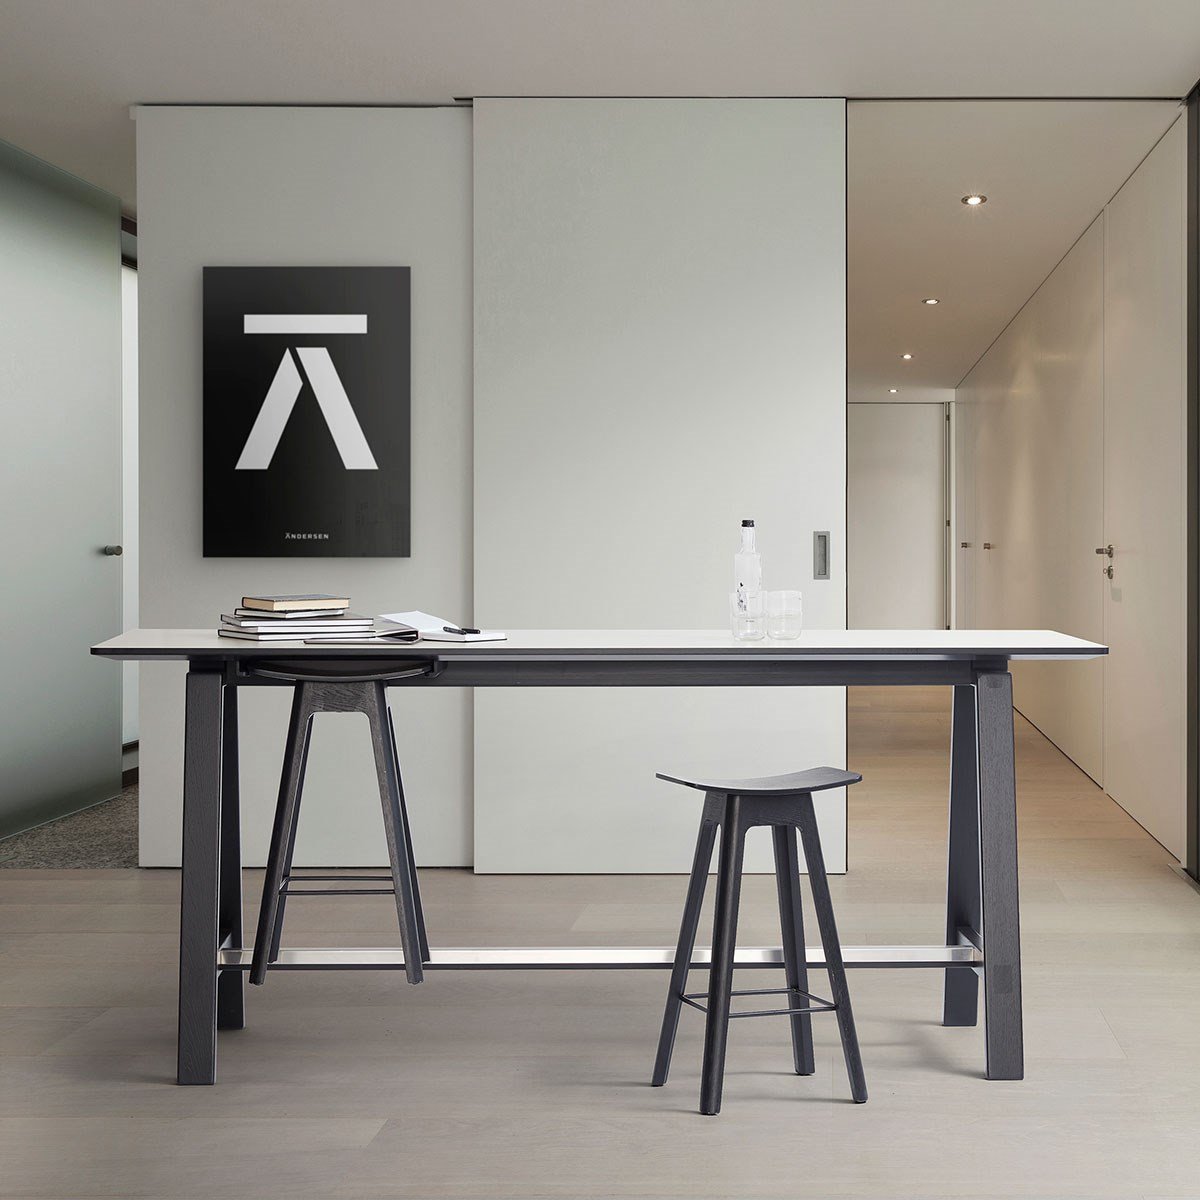 Andersen Furniture Hc1 barstol svart ek, h 67 cm